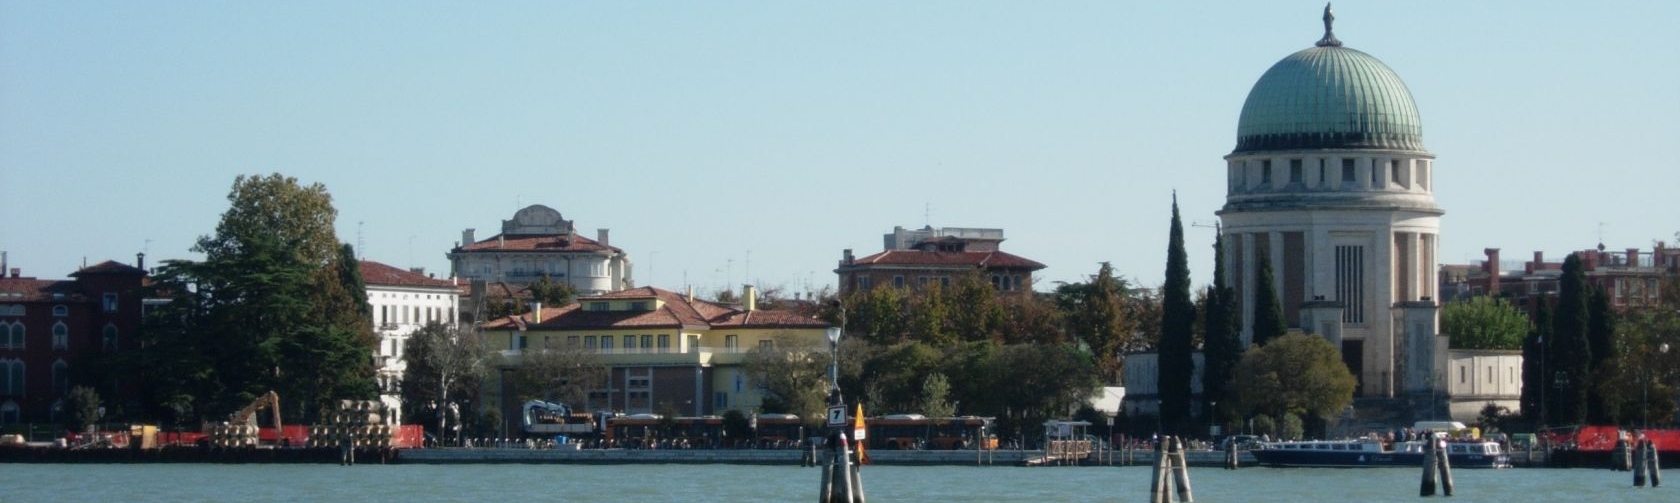 Agenzia immobiliare - Acquistare immobile di prestigio Venezia Lido